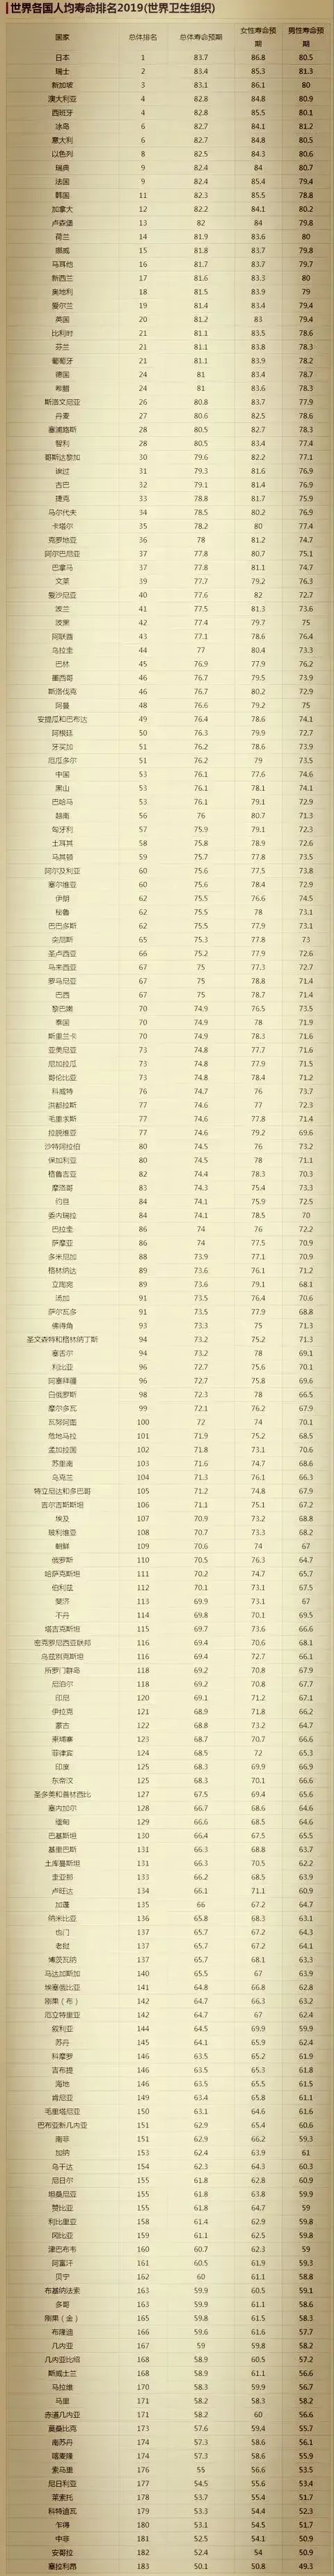 世界寿命排行榜_世界各国人均寿命排名,中国作为一个发展中国家非常不错了